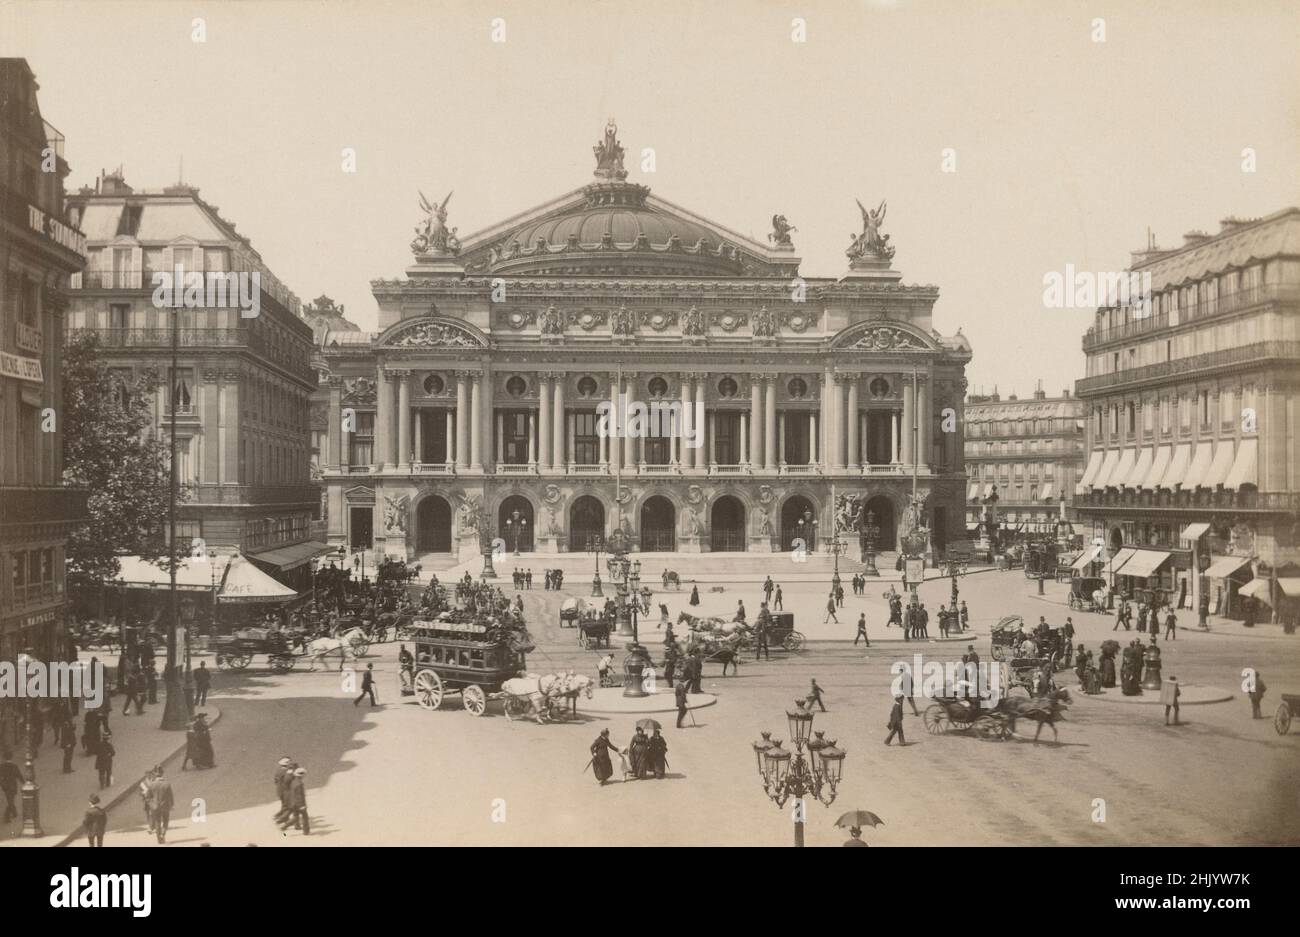 Fotografía antigua de alrededor de 1890 del Palacio Garnier y la Place de l'Opéra en París, Francia. FUENTE: FOTOGRAFÍA ORIGINAL EN ALBUMEN Foto de stock